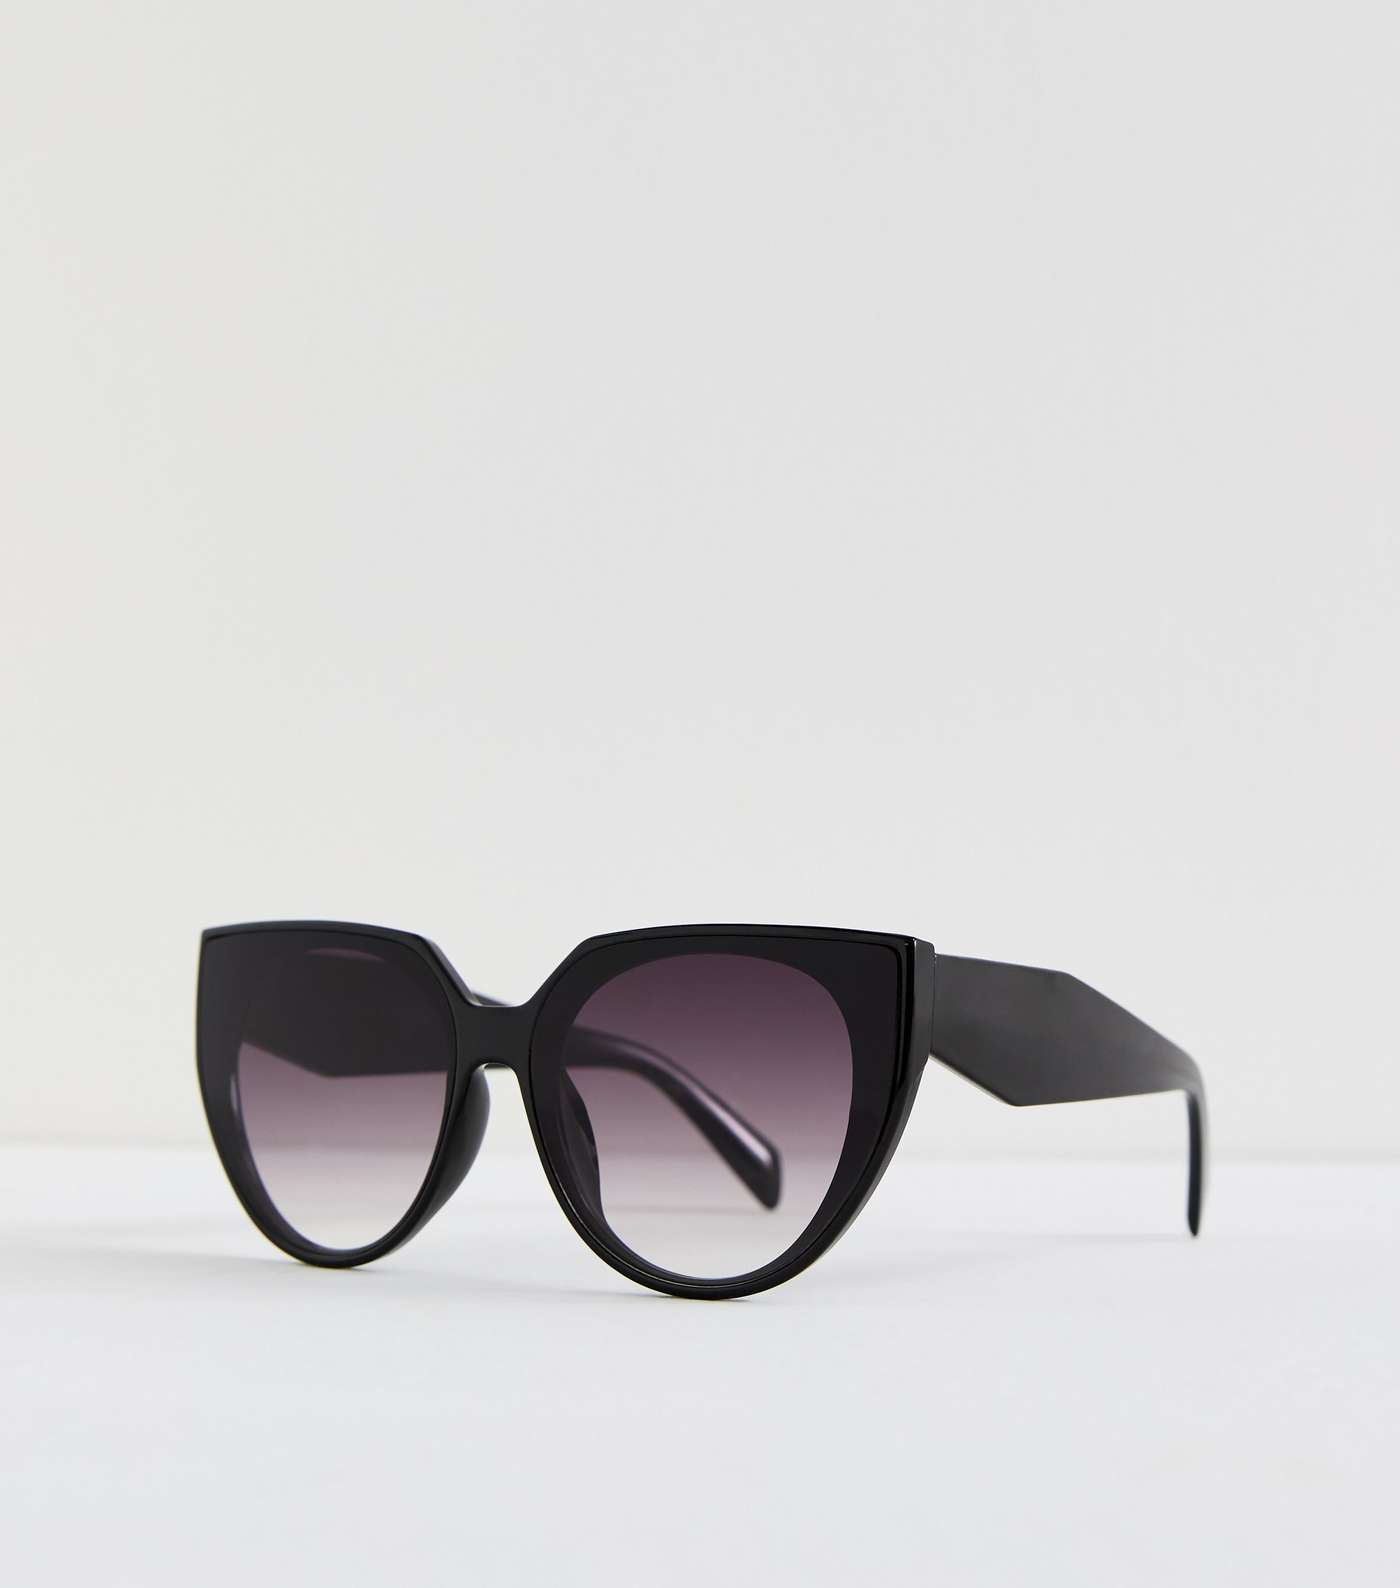 Black Cat Eye Frame Sunglasses Image 2